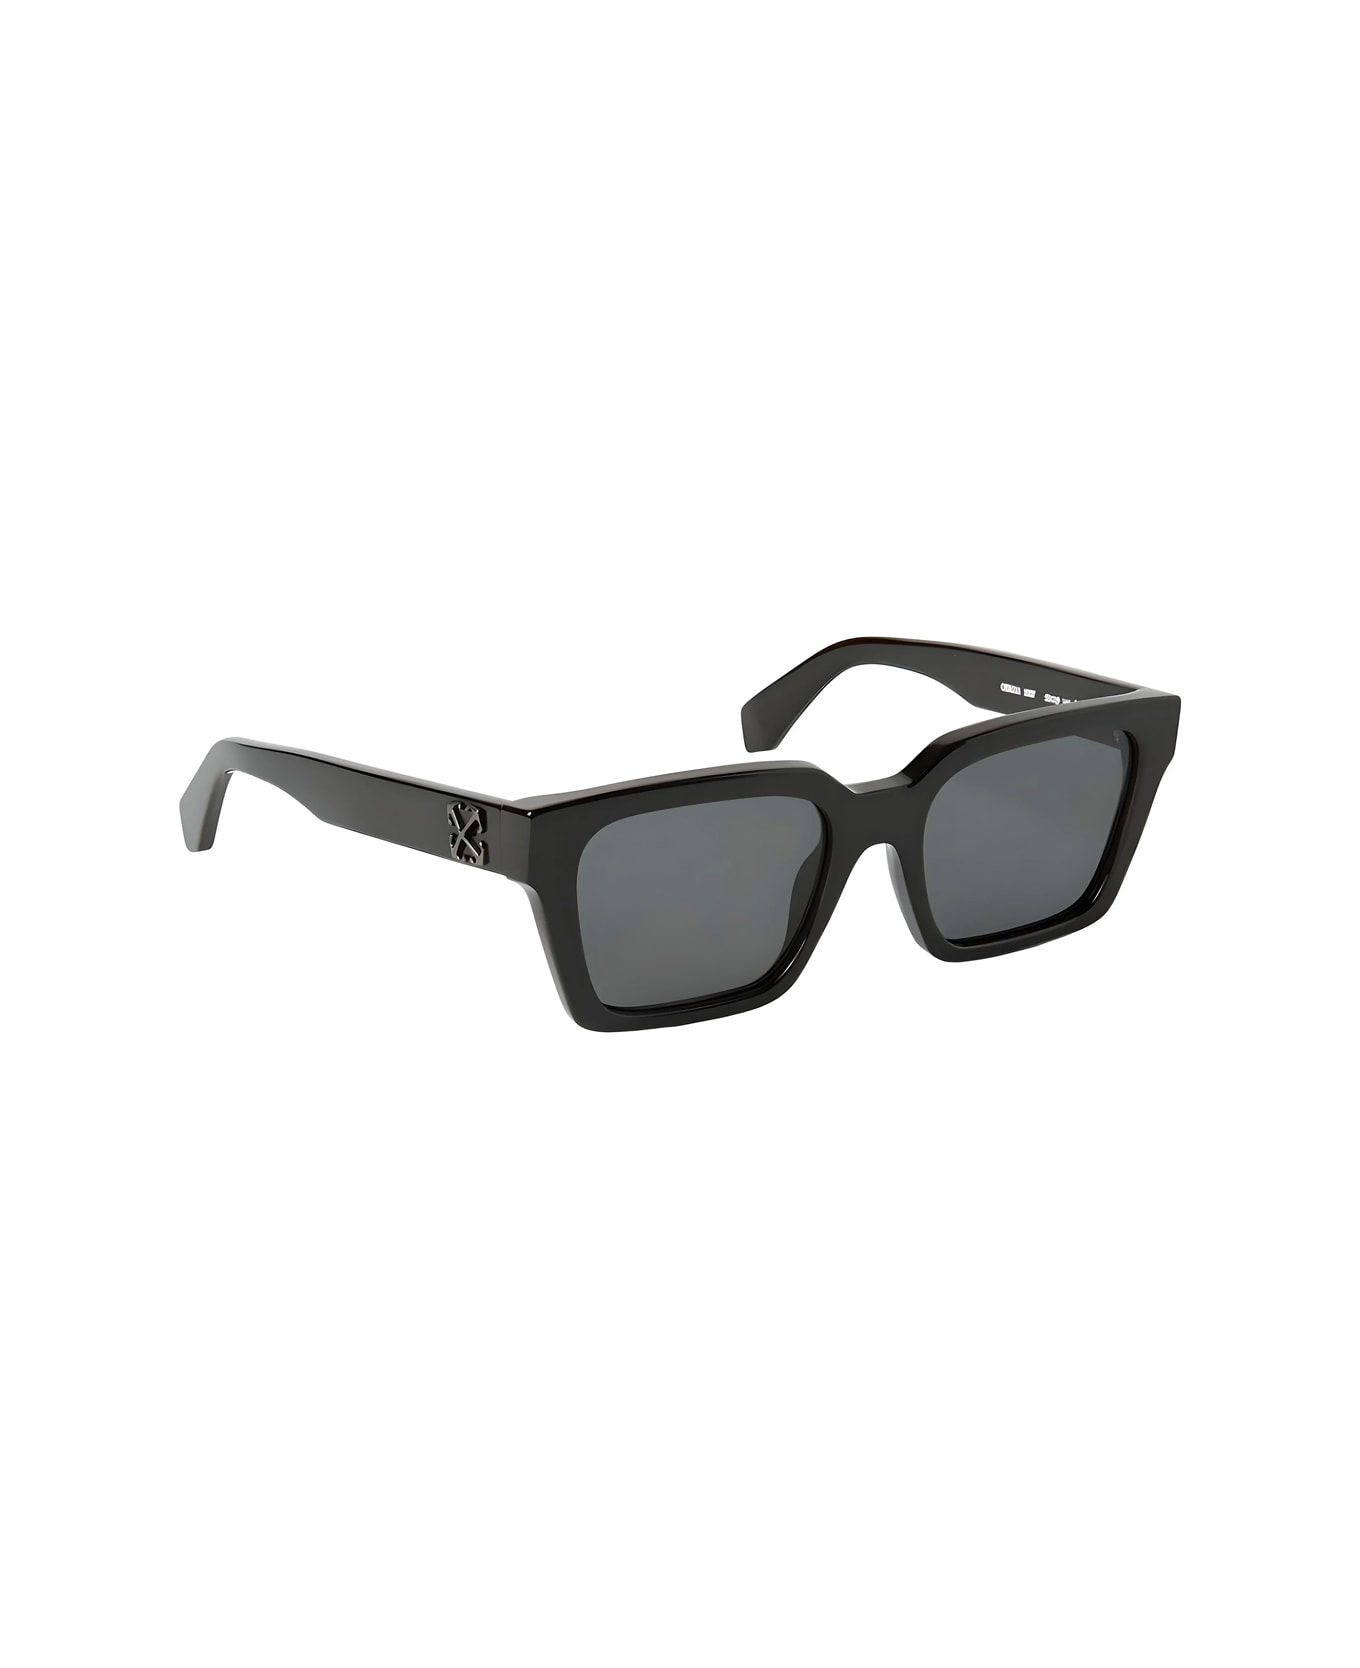 Off-White Oeri111 Branson 1007 Black Sunglasses - Nero